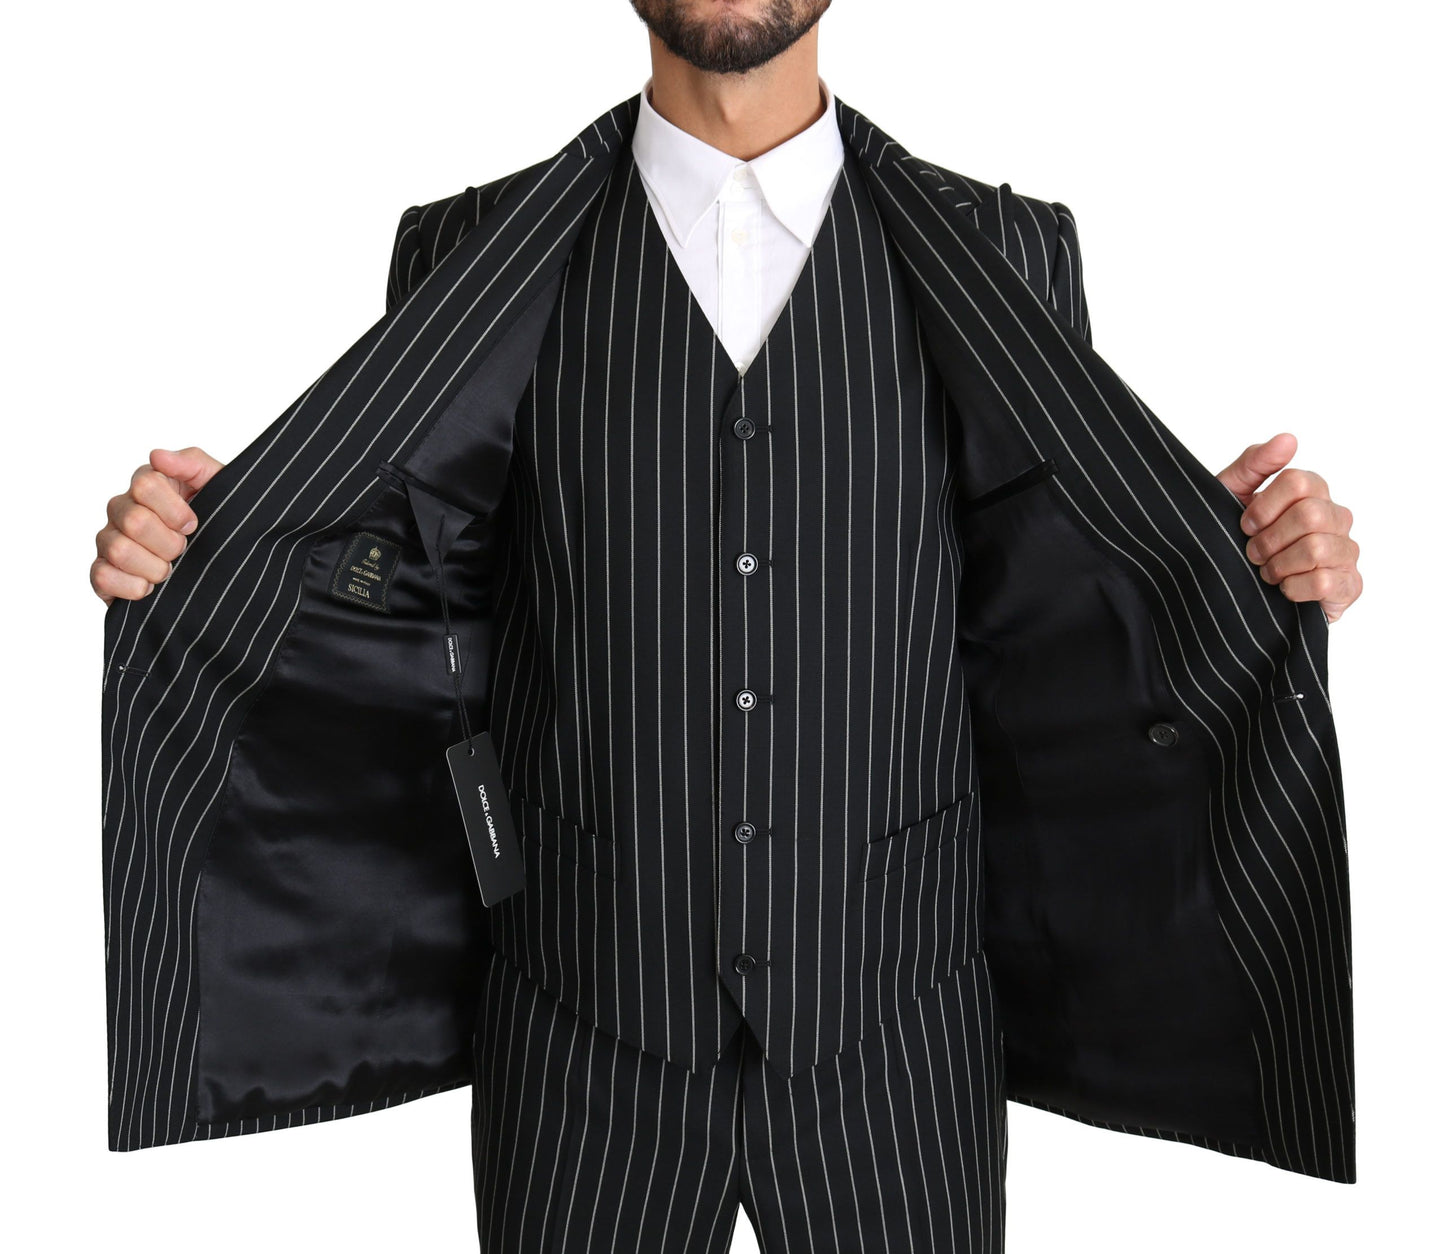 Elegant Black Striped Three-Piece Suit